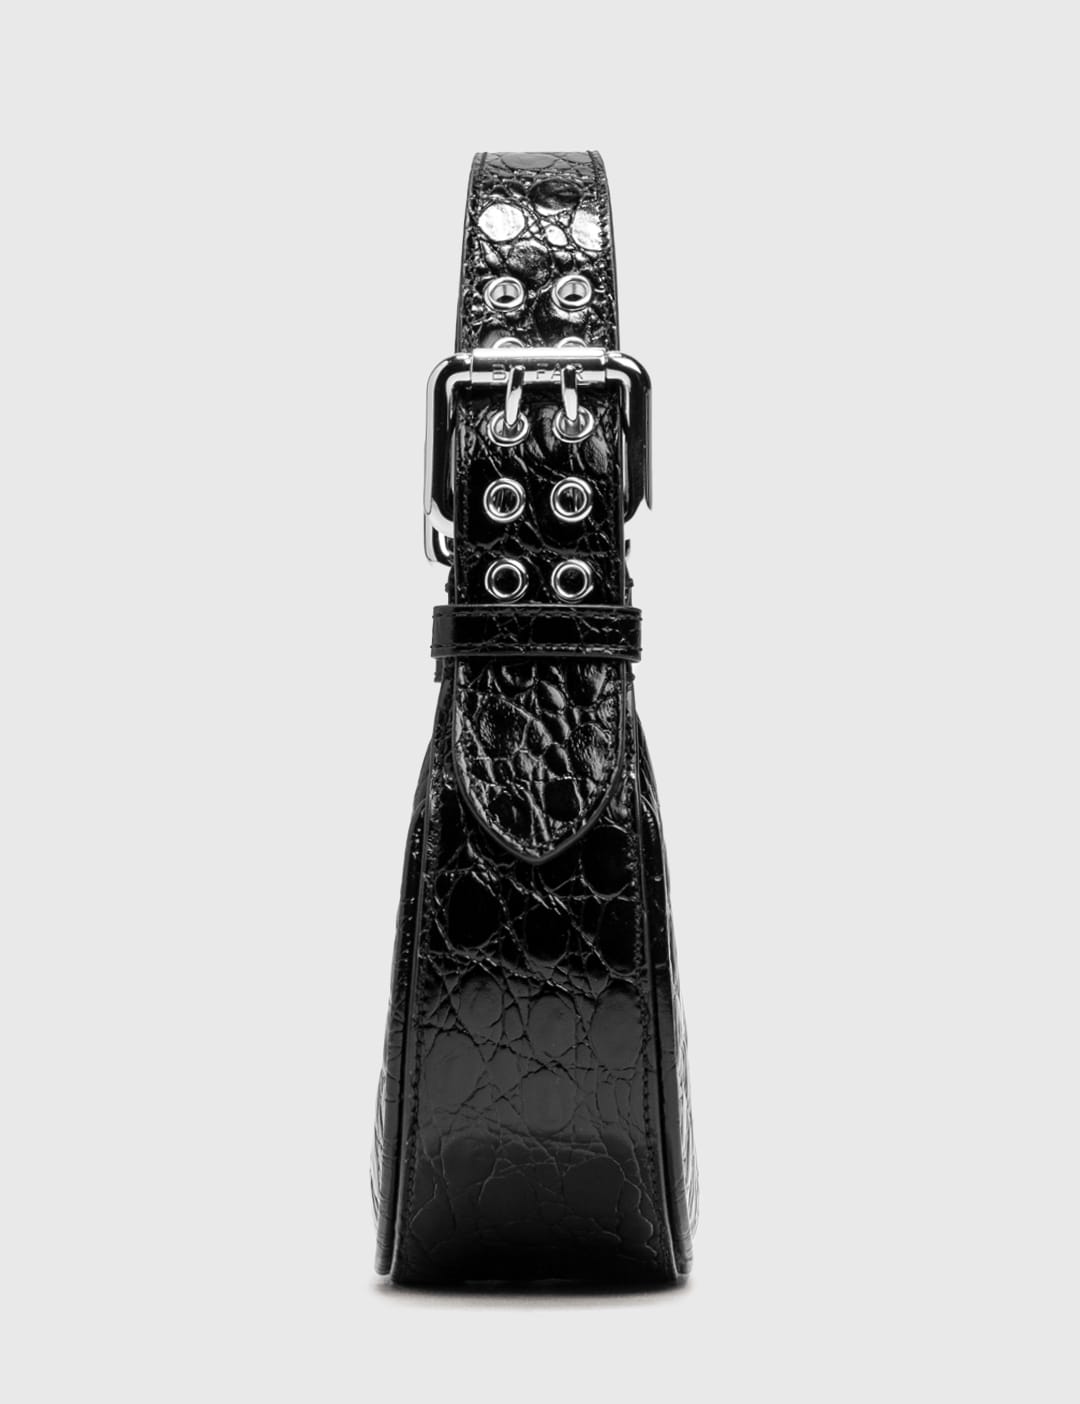 直販超特価 ソーホー ミニ FAR BY ブラック レザー エンボスド クロコ サーキュラー ハンドバッグ